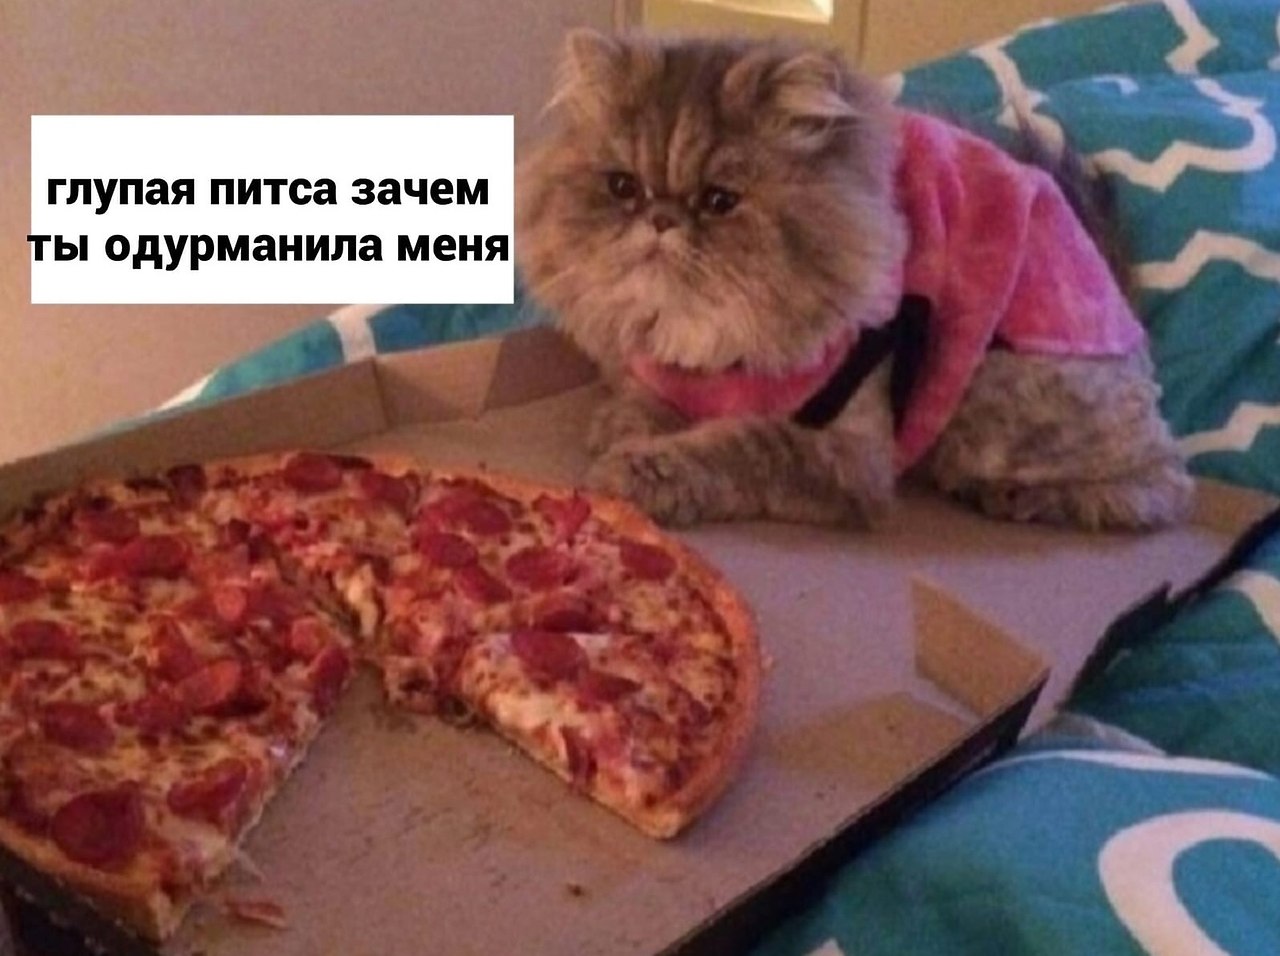 я хочу пиццу я хочу чтобы ты приправил ее соусом сыром сжег заставил плакать фото 72